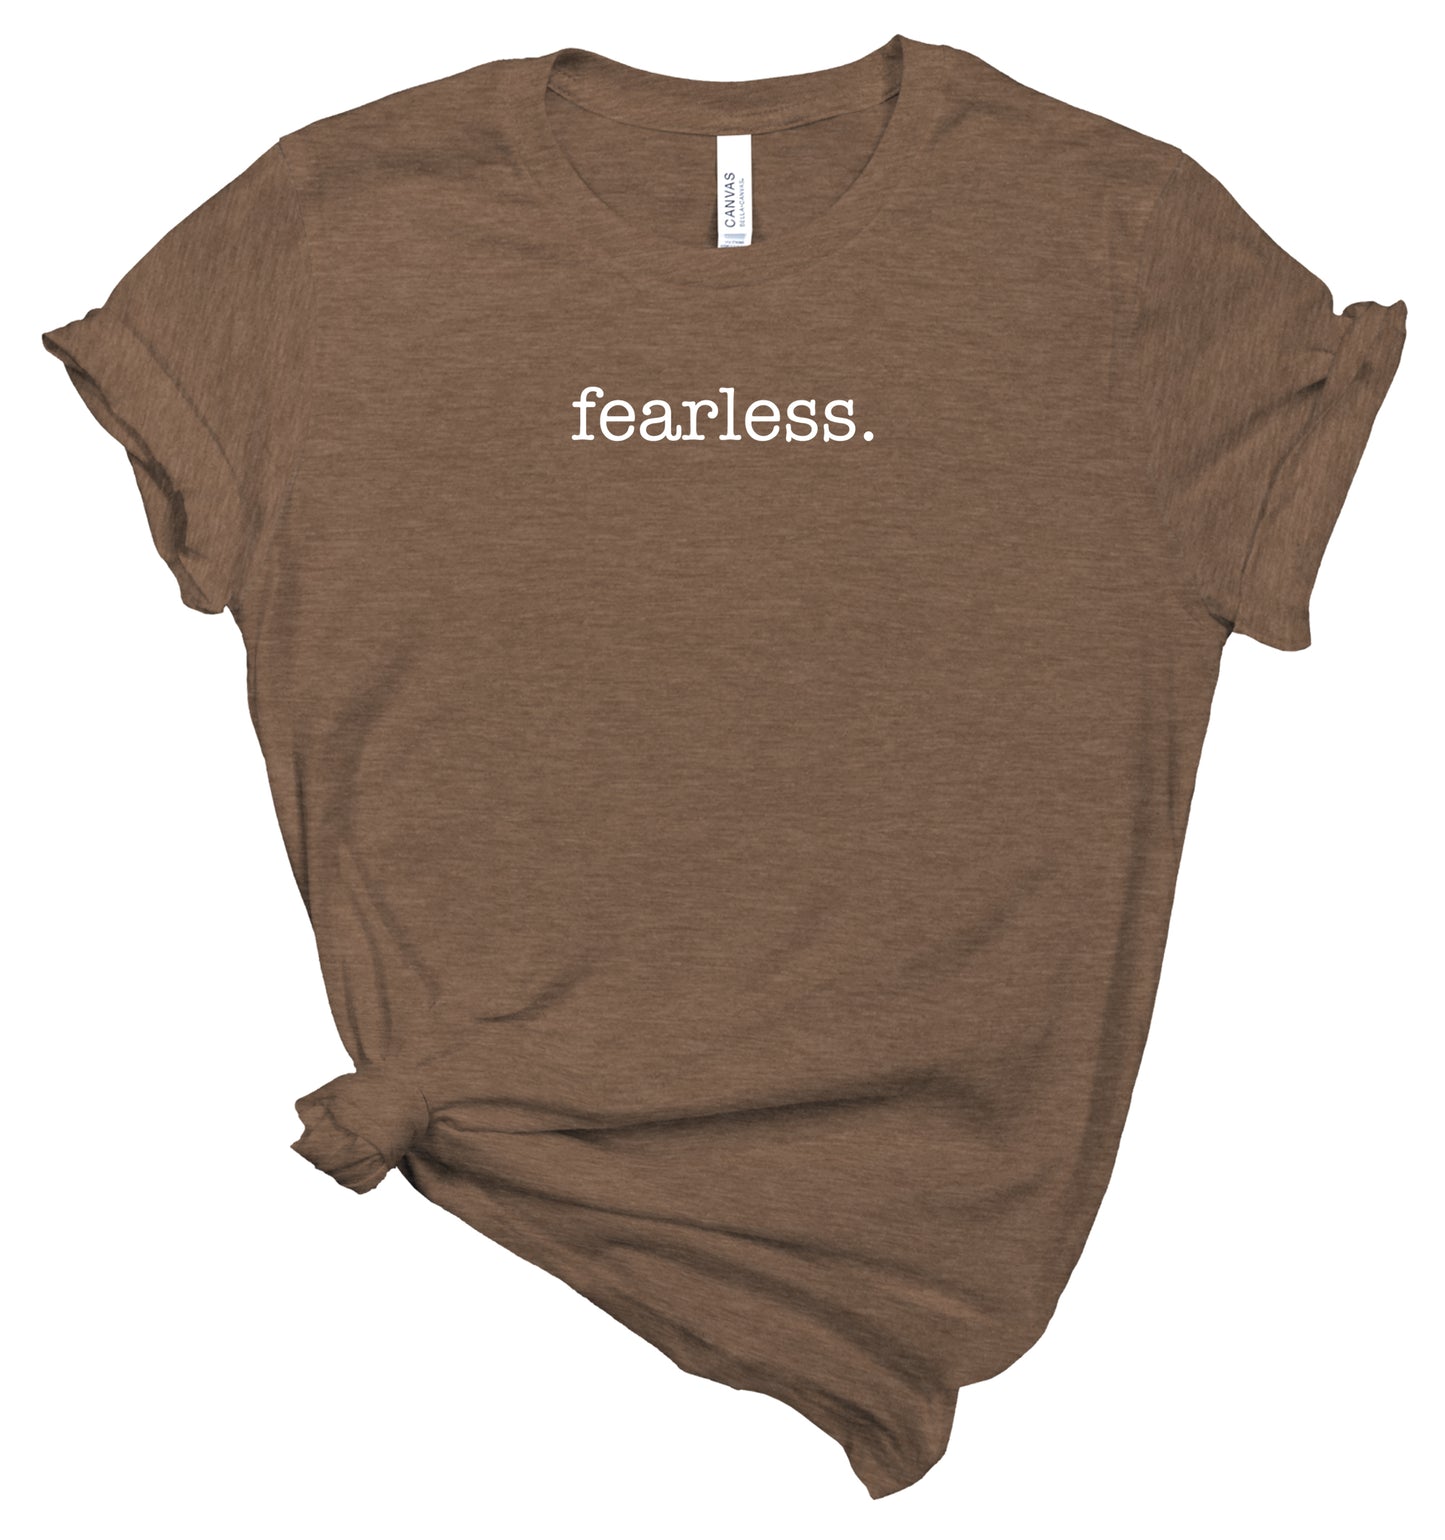 fearless - Affirmation Shirt - T-Shirt